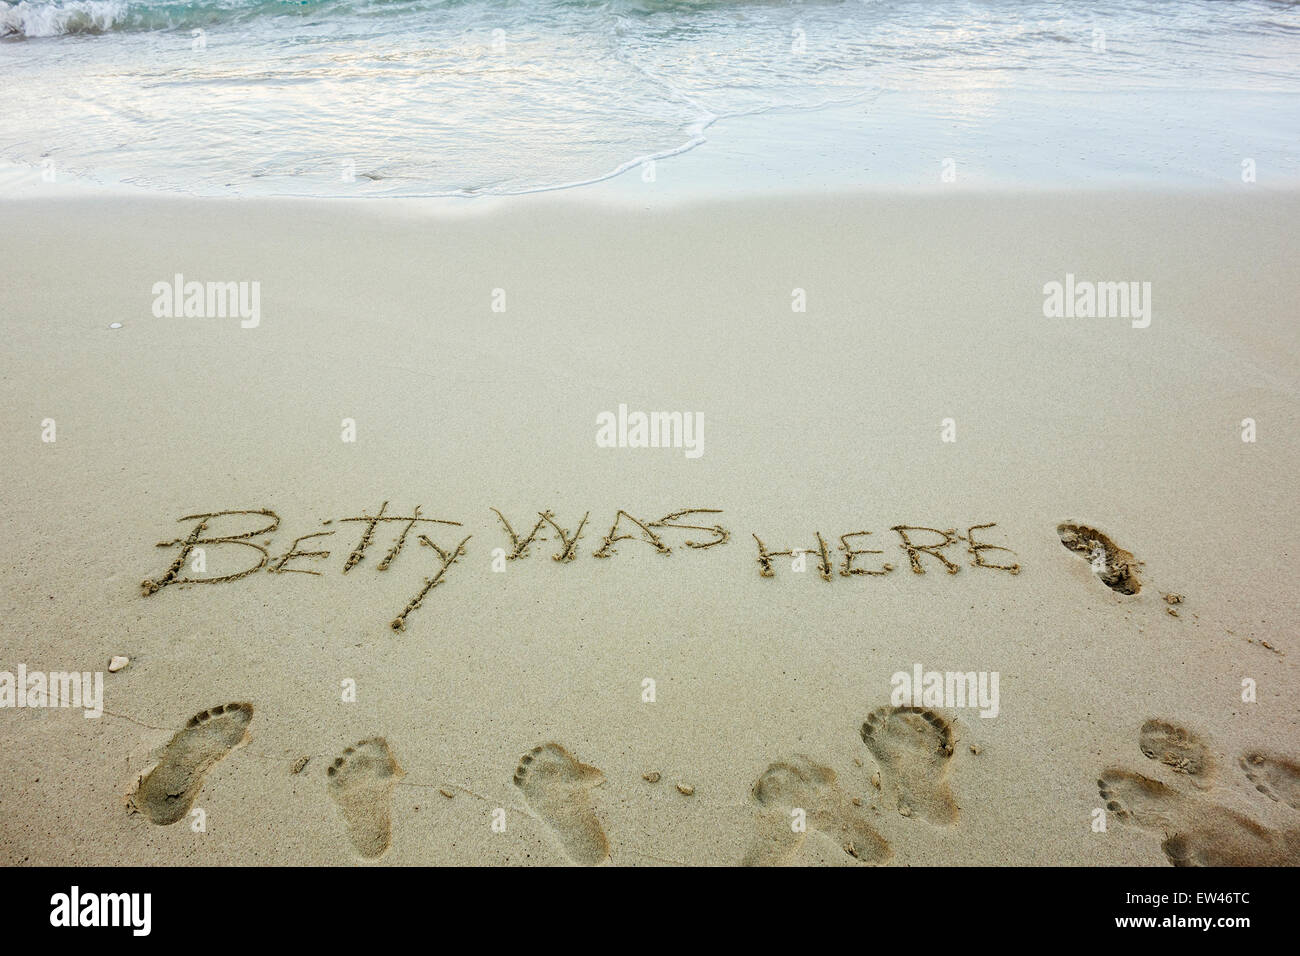 Un message, Betty était ici, écrit dans le sable sur la plage d'une île tropicale des Caraïbes. USVI, U.S.V.I. Banque D'Images